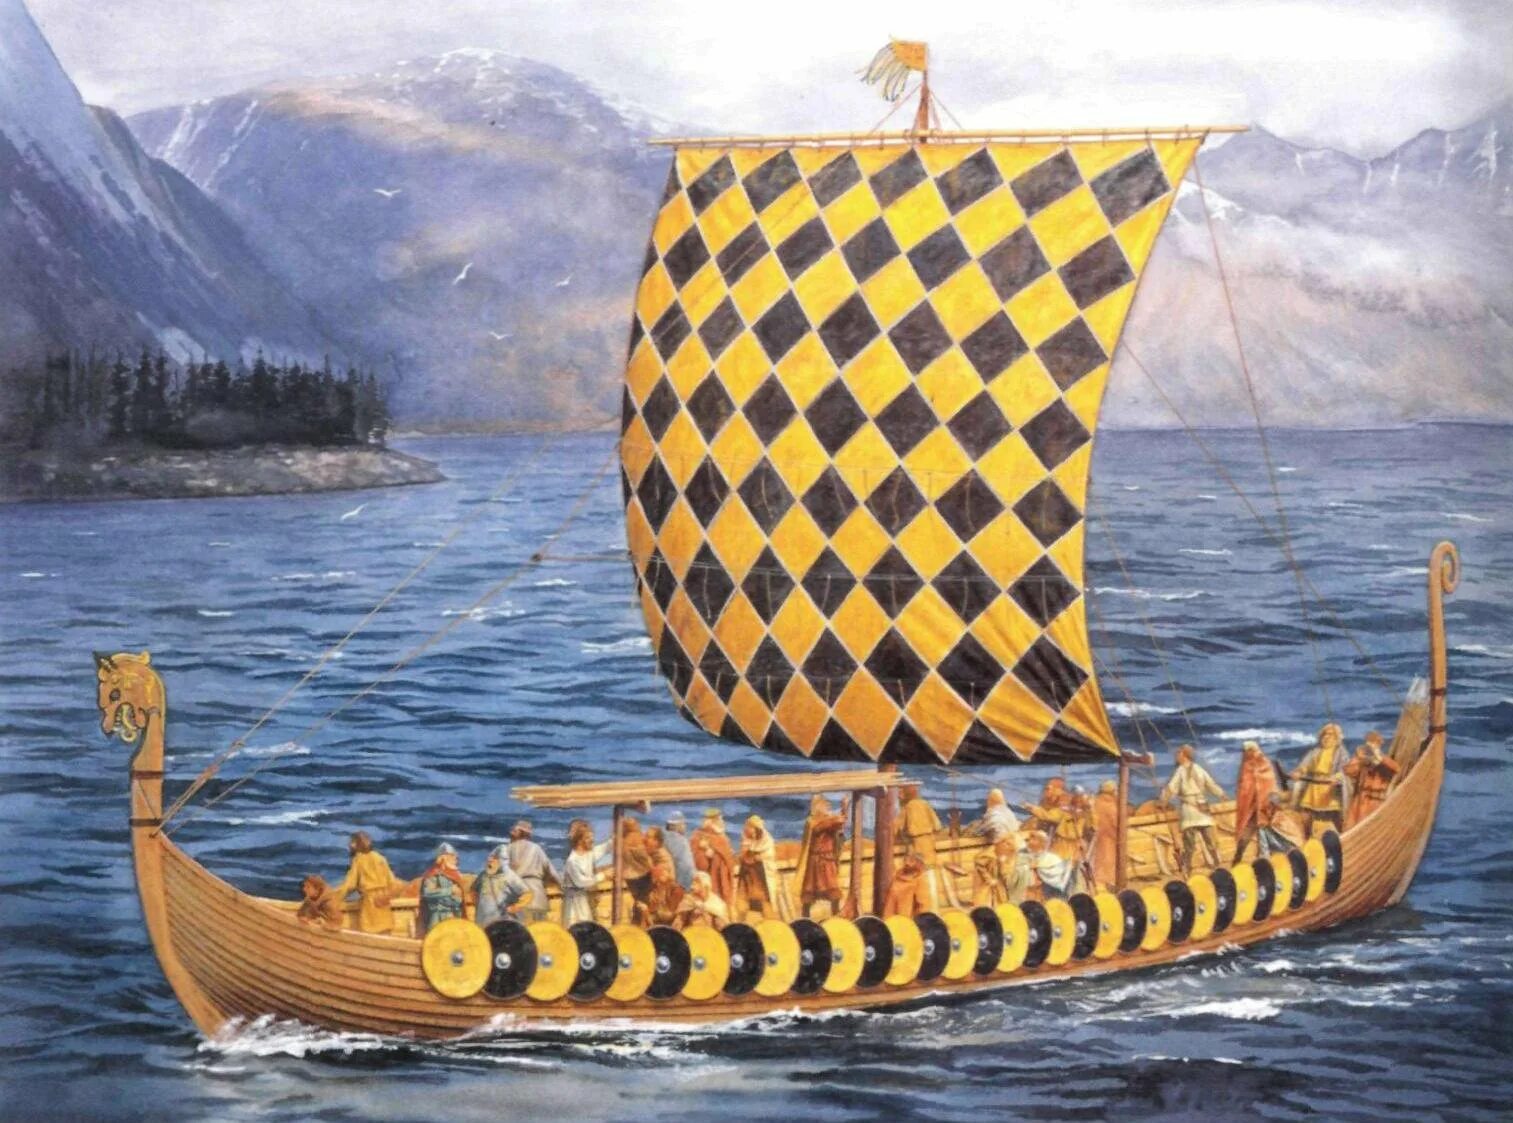 Без ладьи. Карви корабль викингов. Ладья викингов дракар. Гокштадский корабль (дракар). Корабль викингов Драккар 10 век.